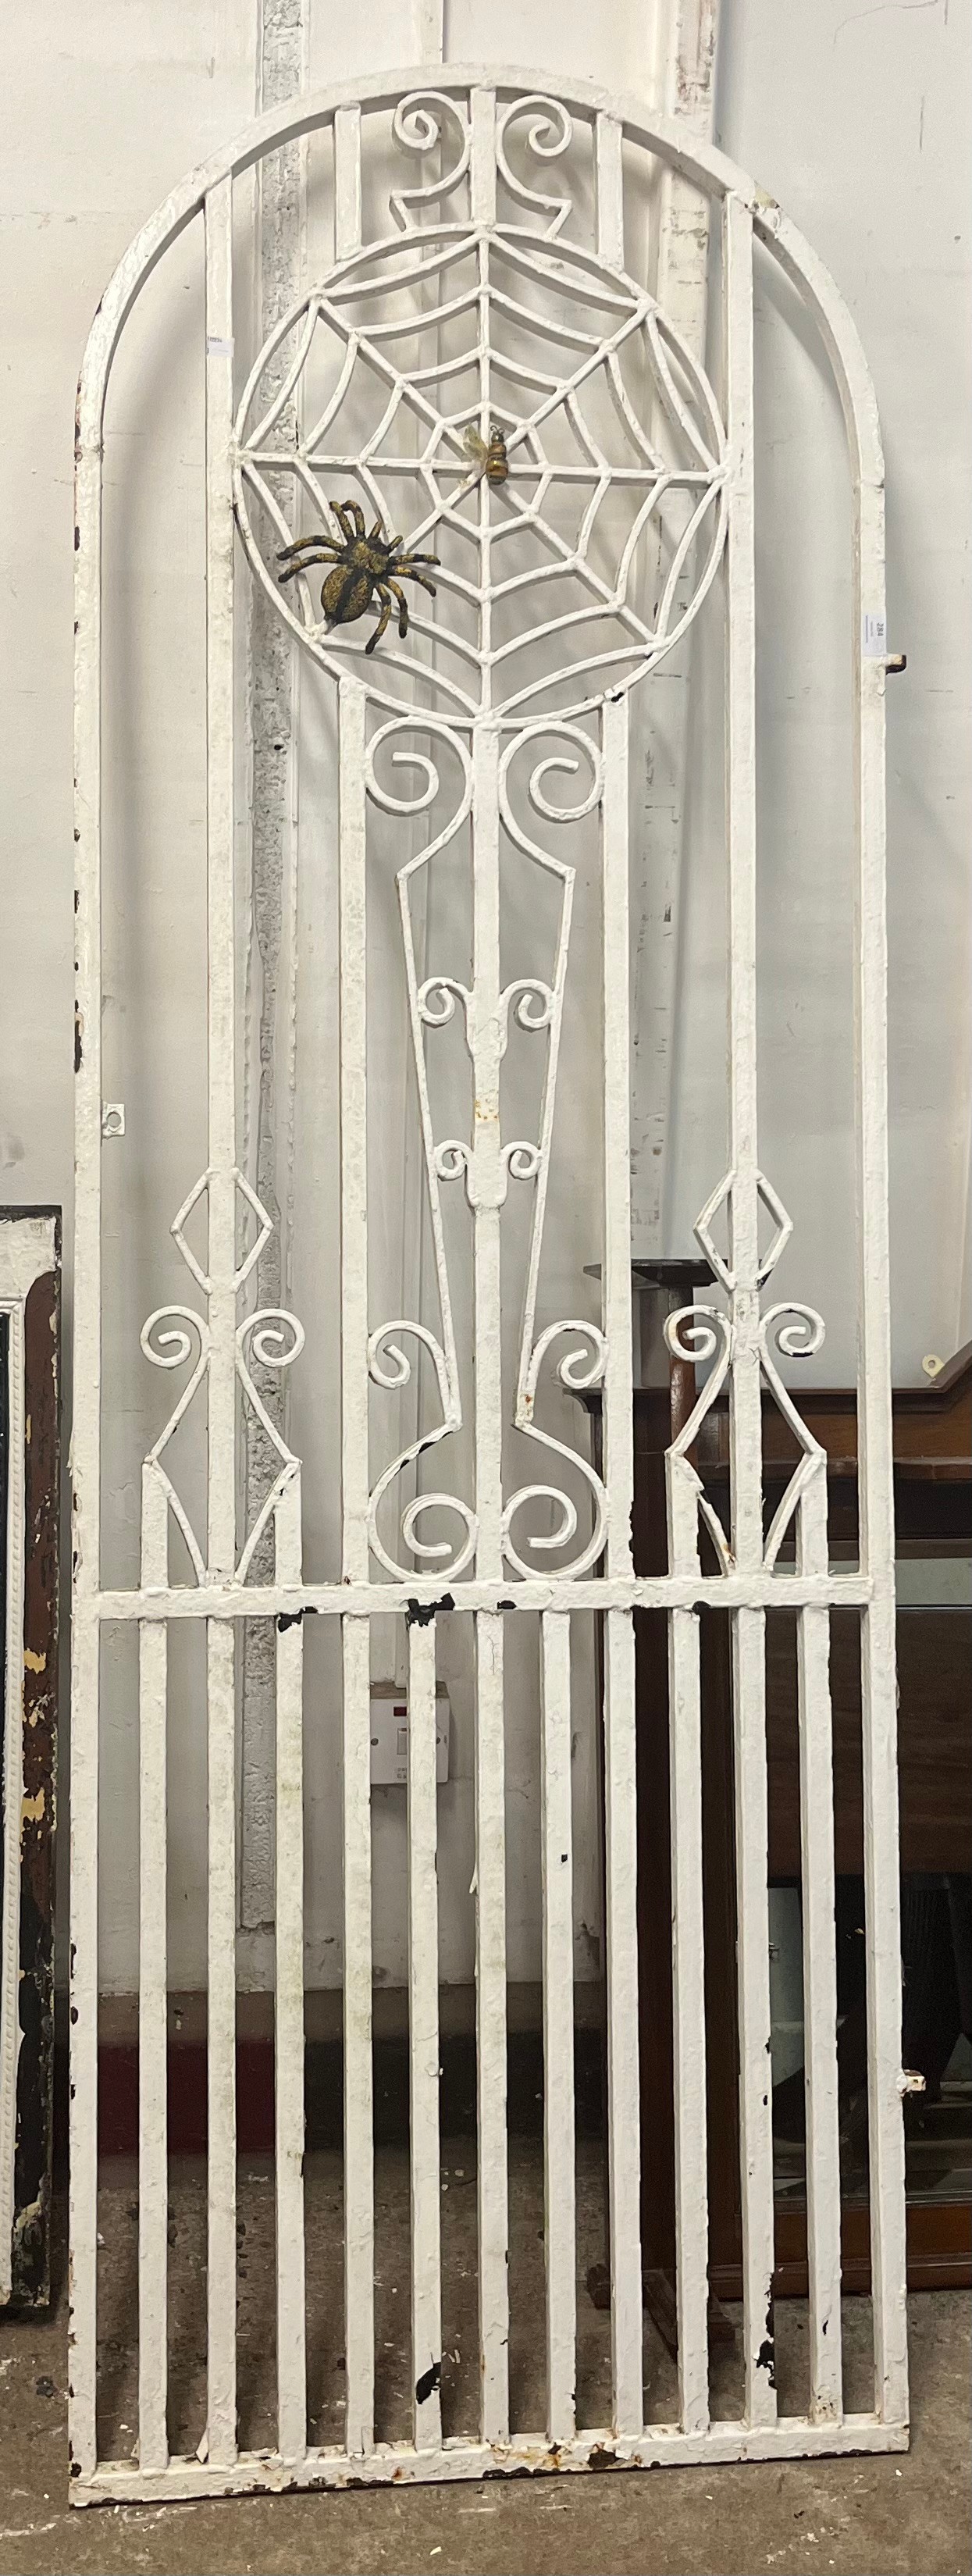 A cast iron garden gate